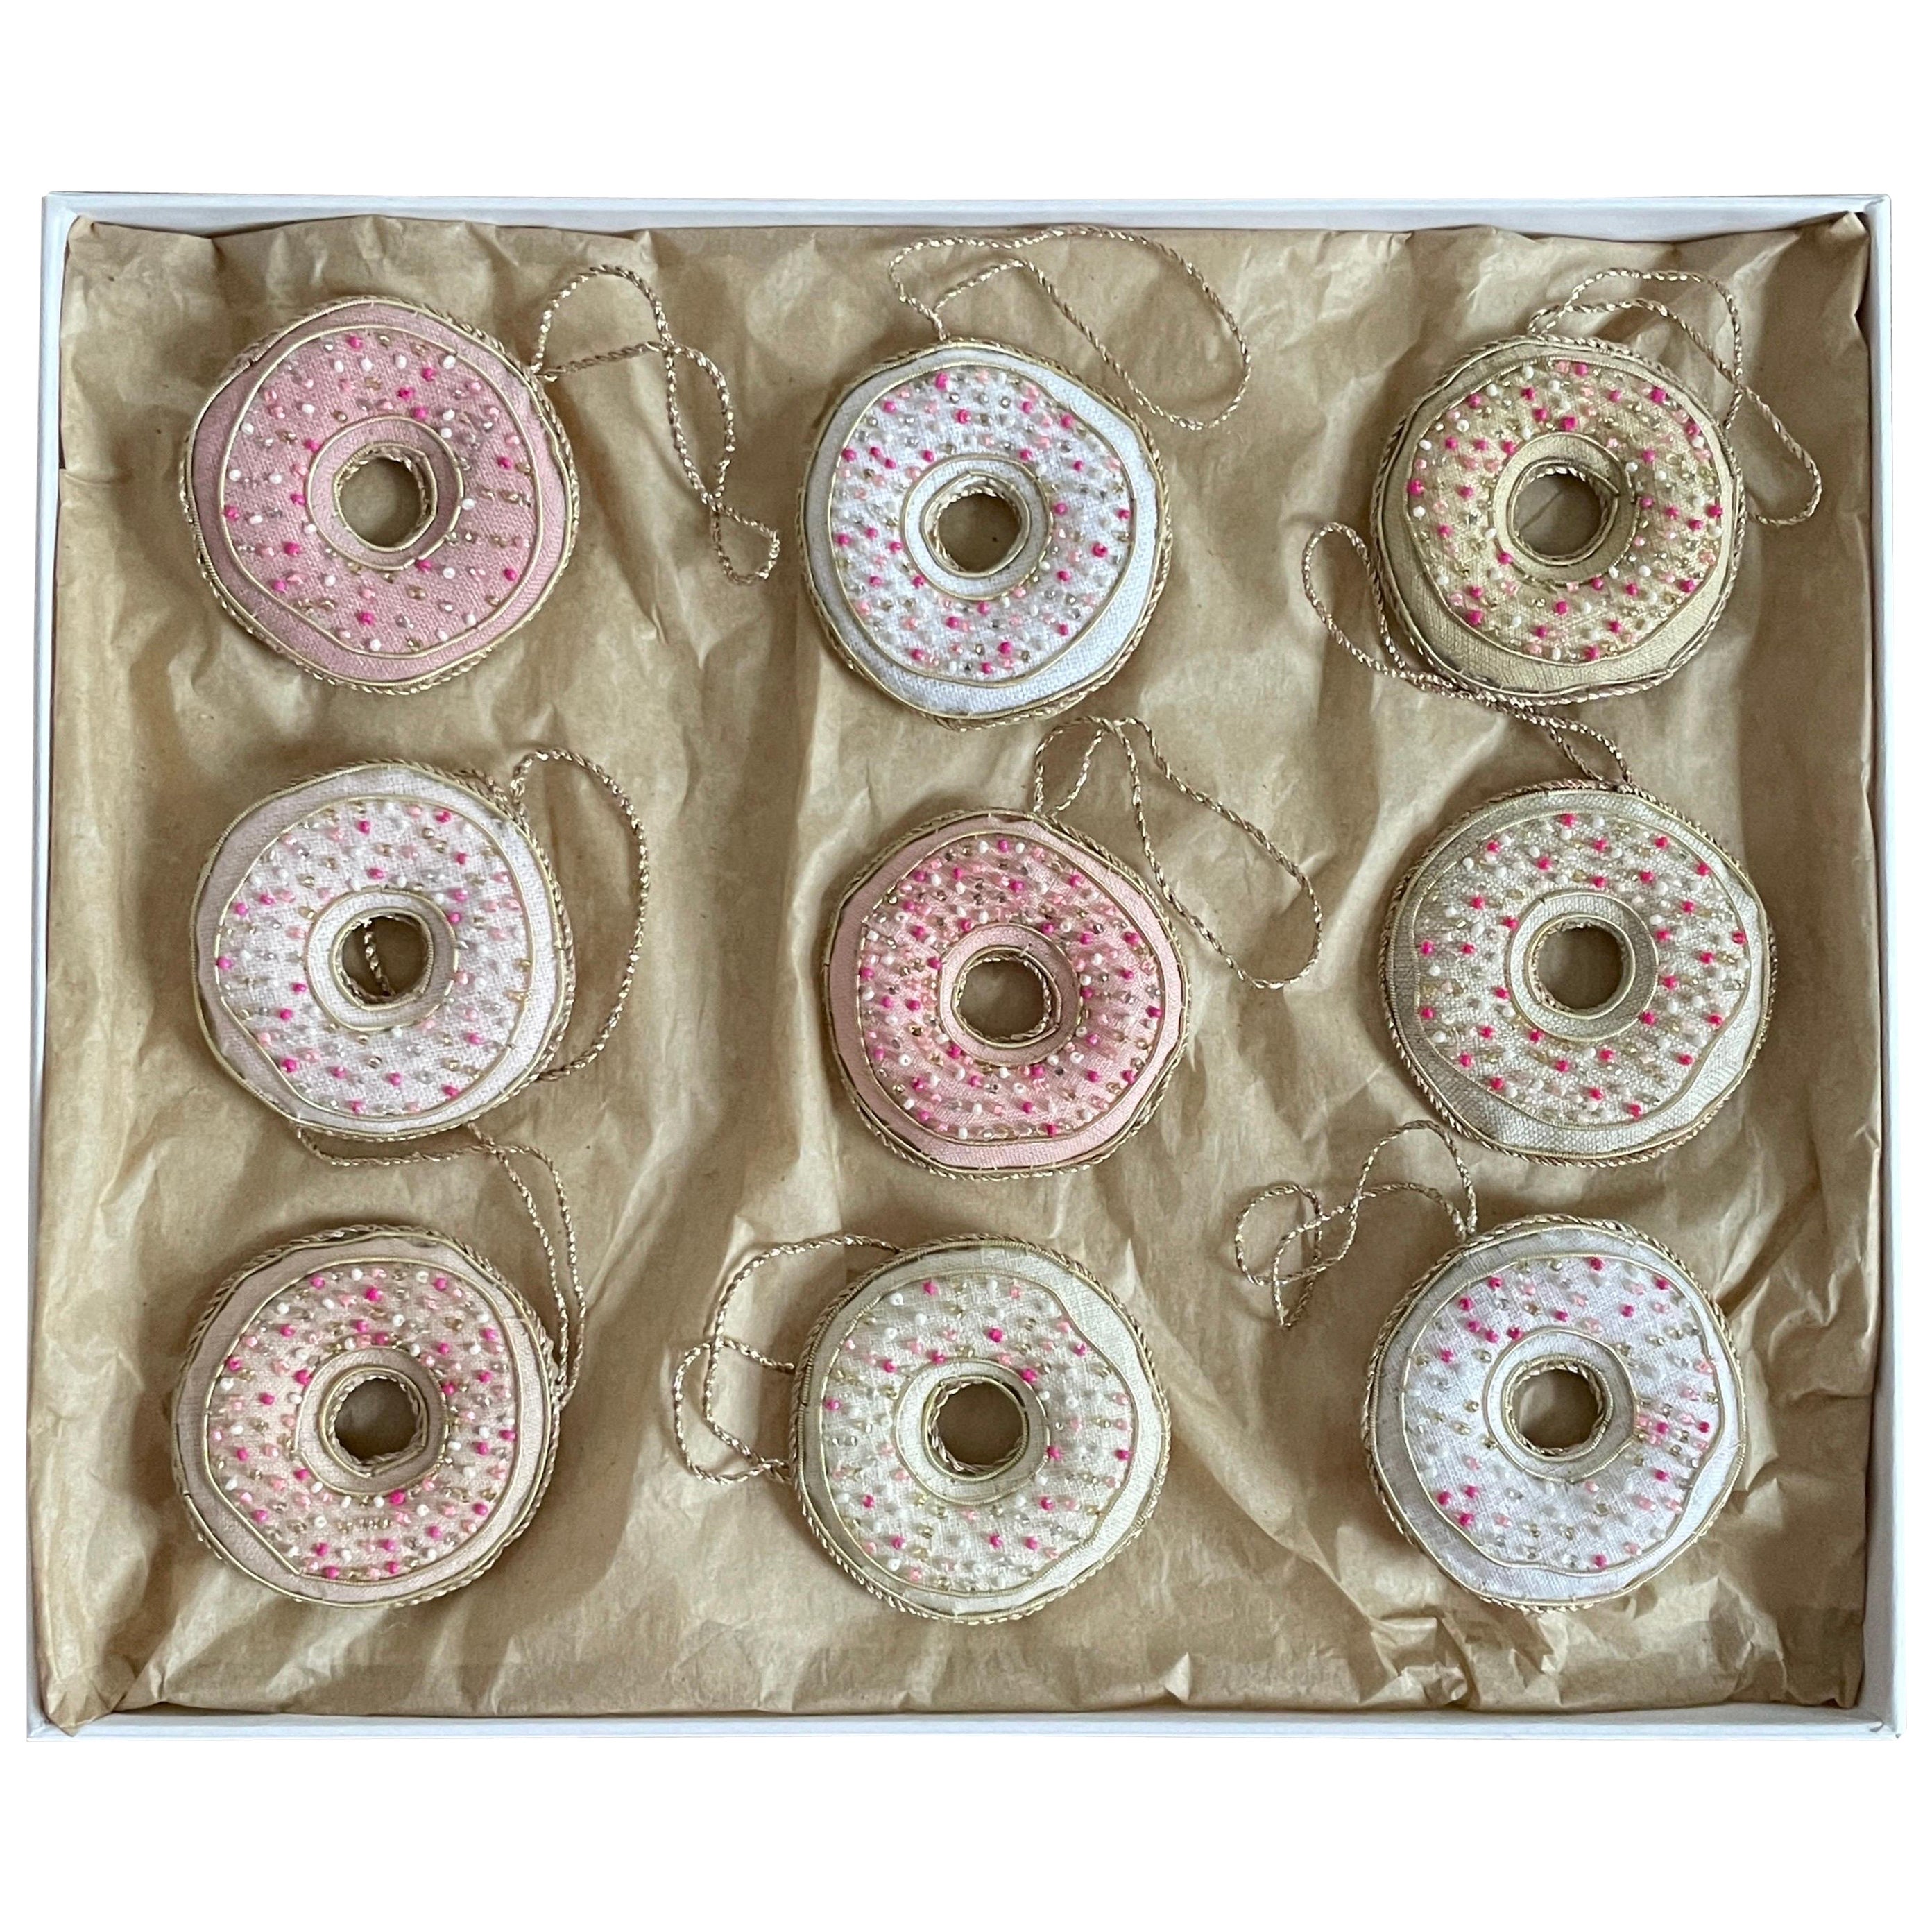 Lot de 9 ornements Donut en lin irlandais artisanal en édition limitée par Katie Larmour

Il s'agit d'un luxueux coffret d'ornements décoratifs fabriqués artisanalement avec de l'authentique lin irlandais, exclusif à 1stdibs. Ils sont spéciaux parce